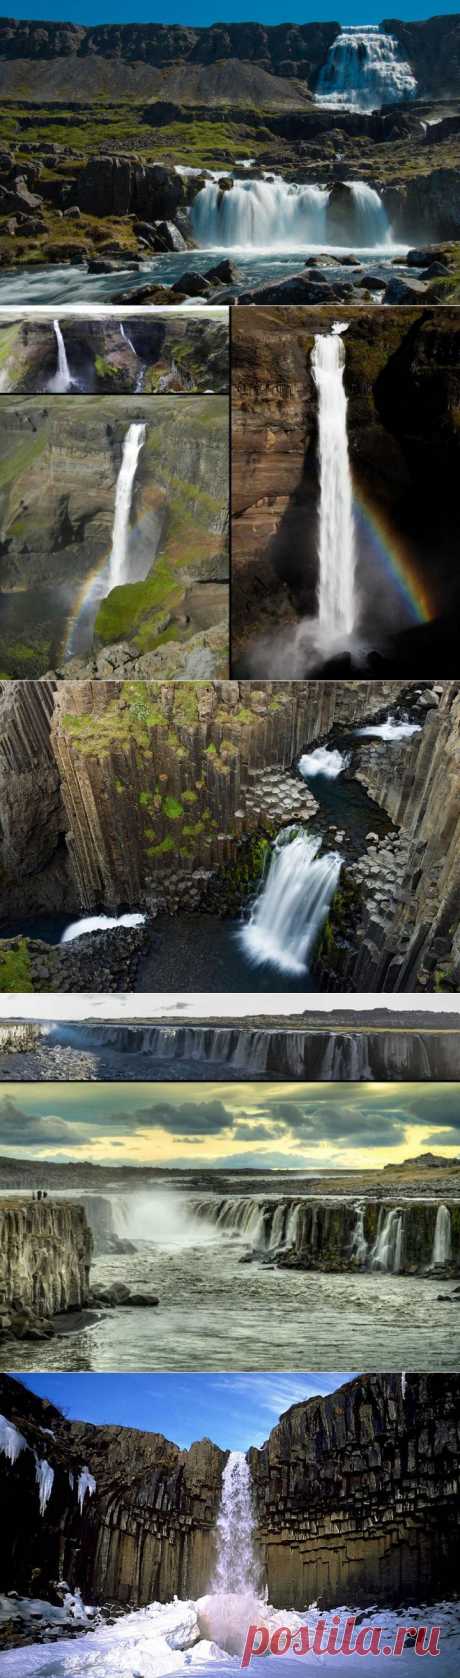 (+1) - Красоты водопадов Исландии | Непутевые заметки